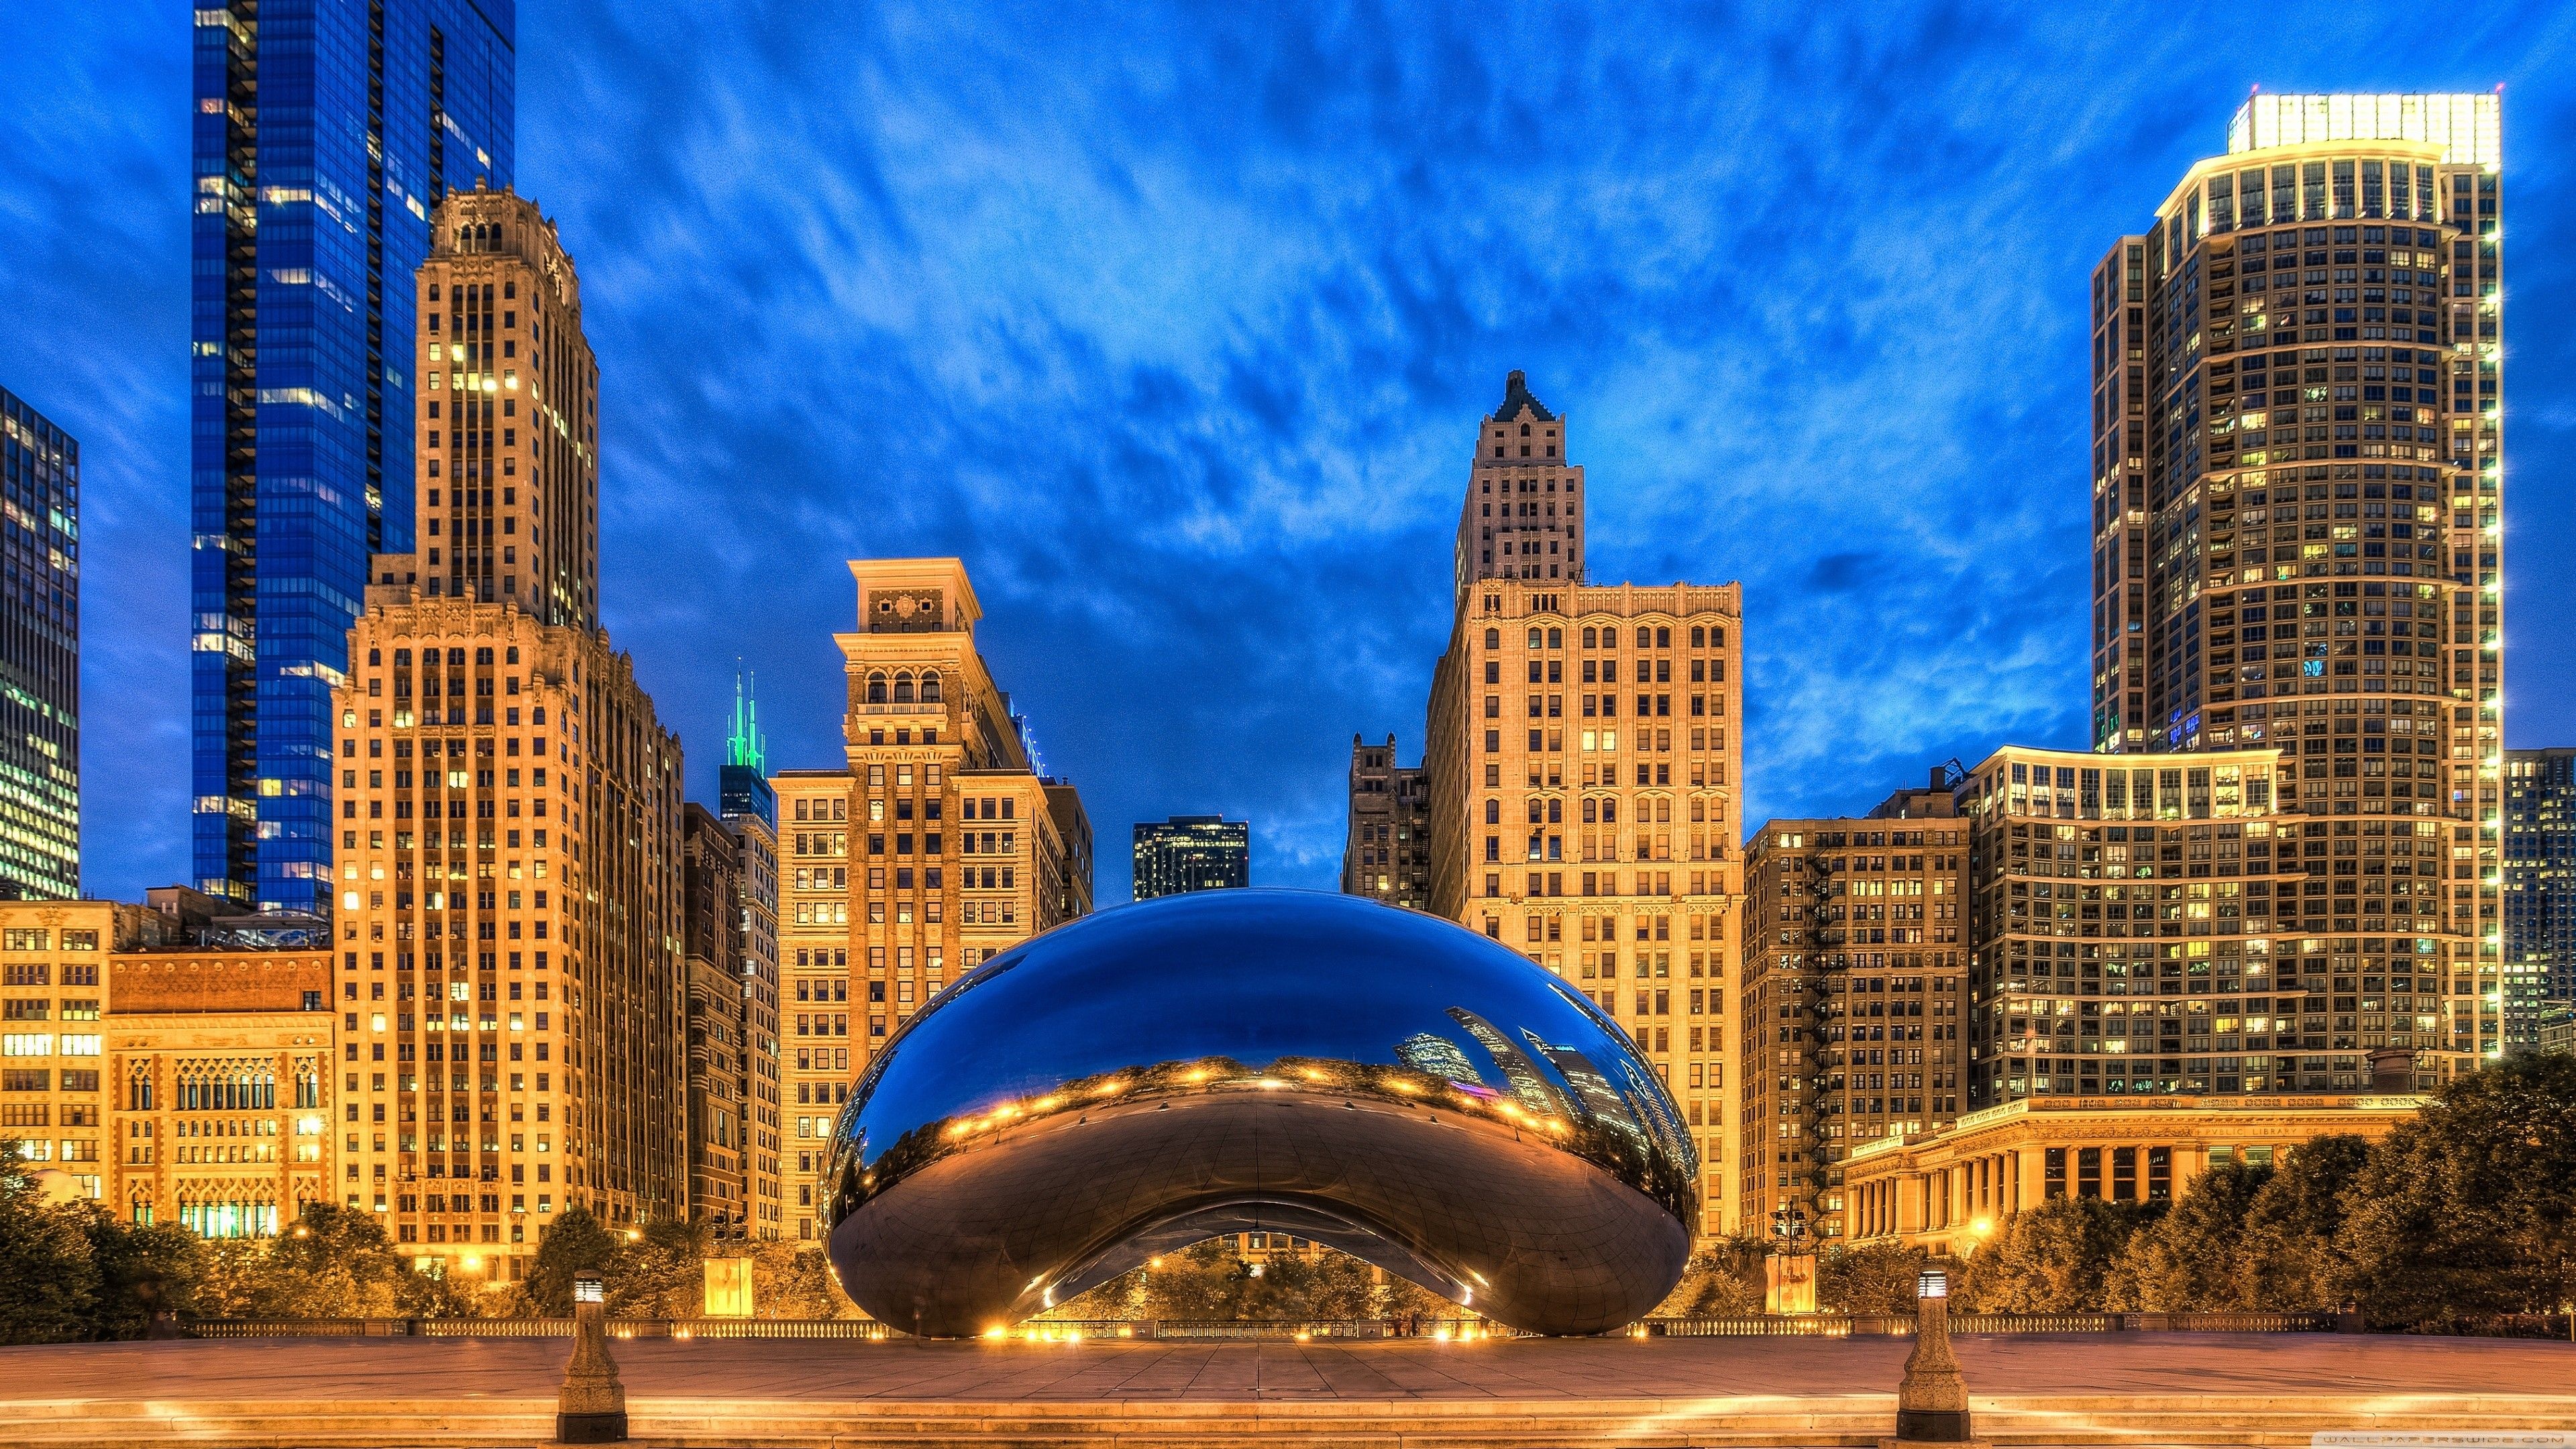 Chicago: Cloud Gate, Millennium Park, Urban landscape. 3840x2160 4K Background.